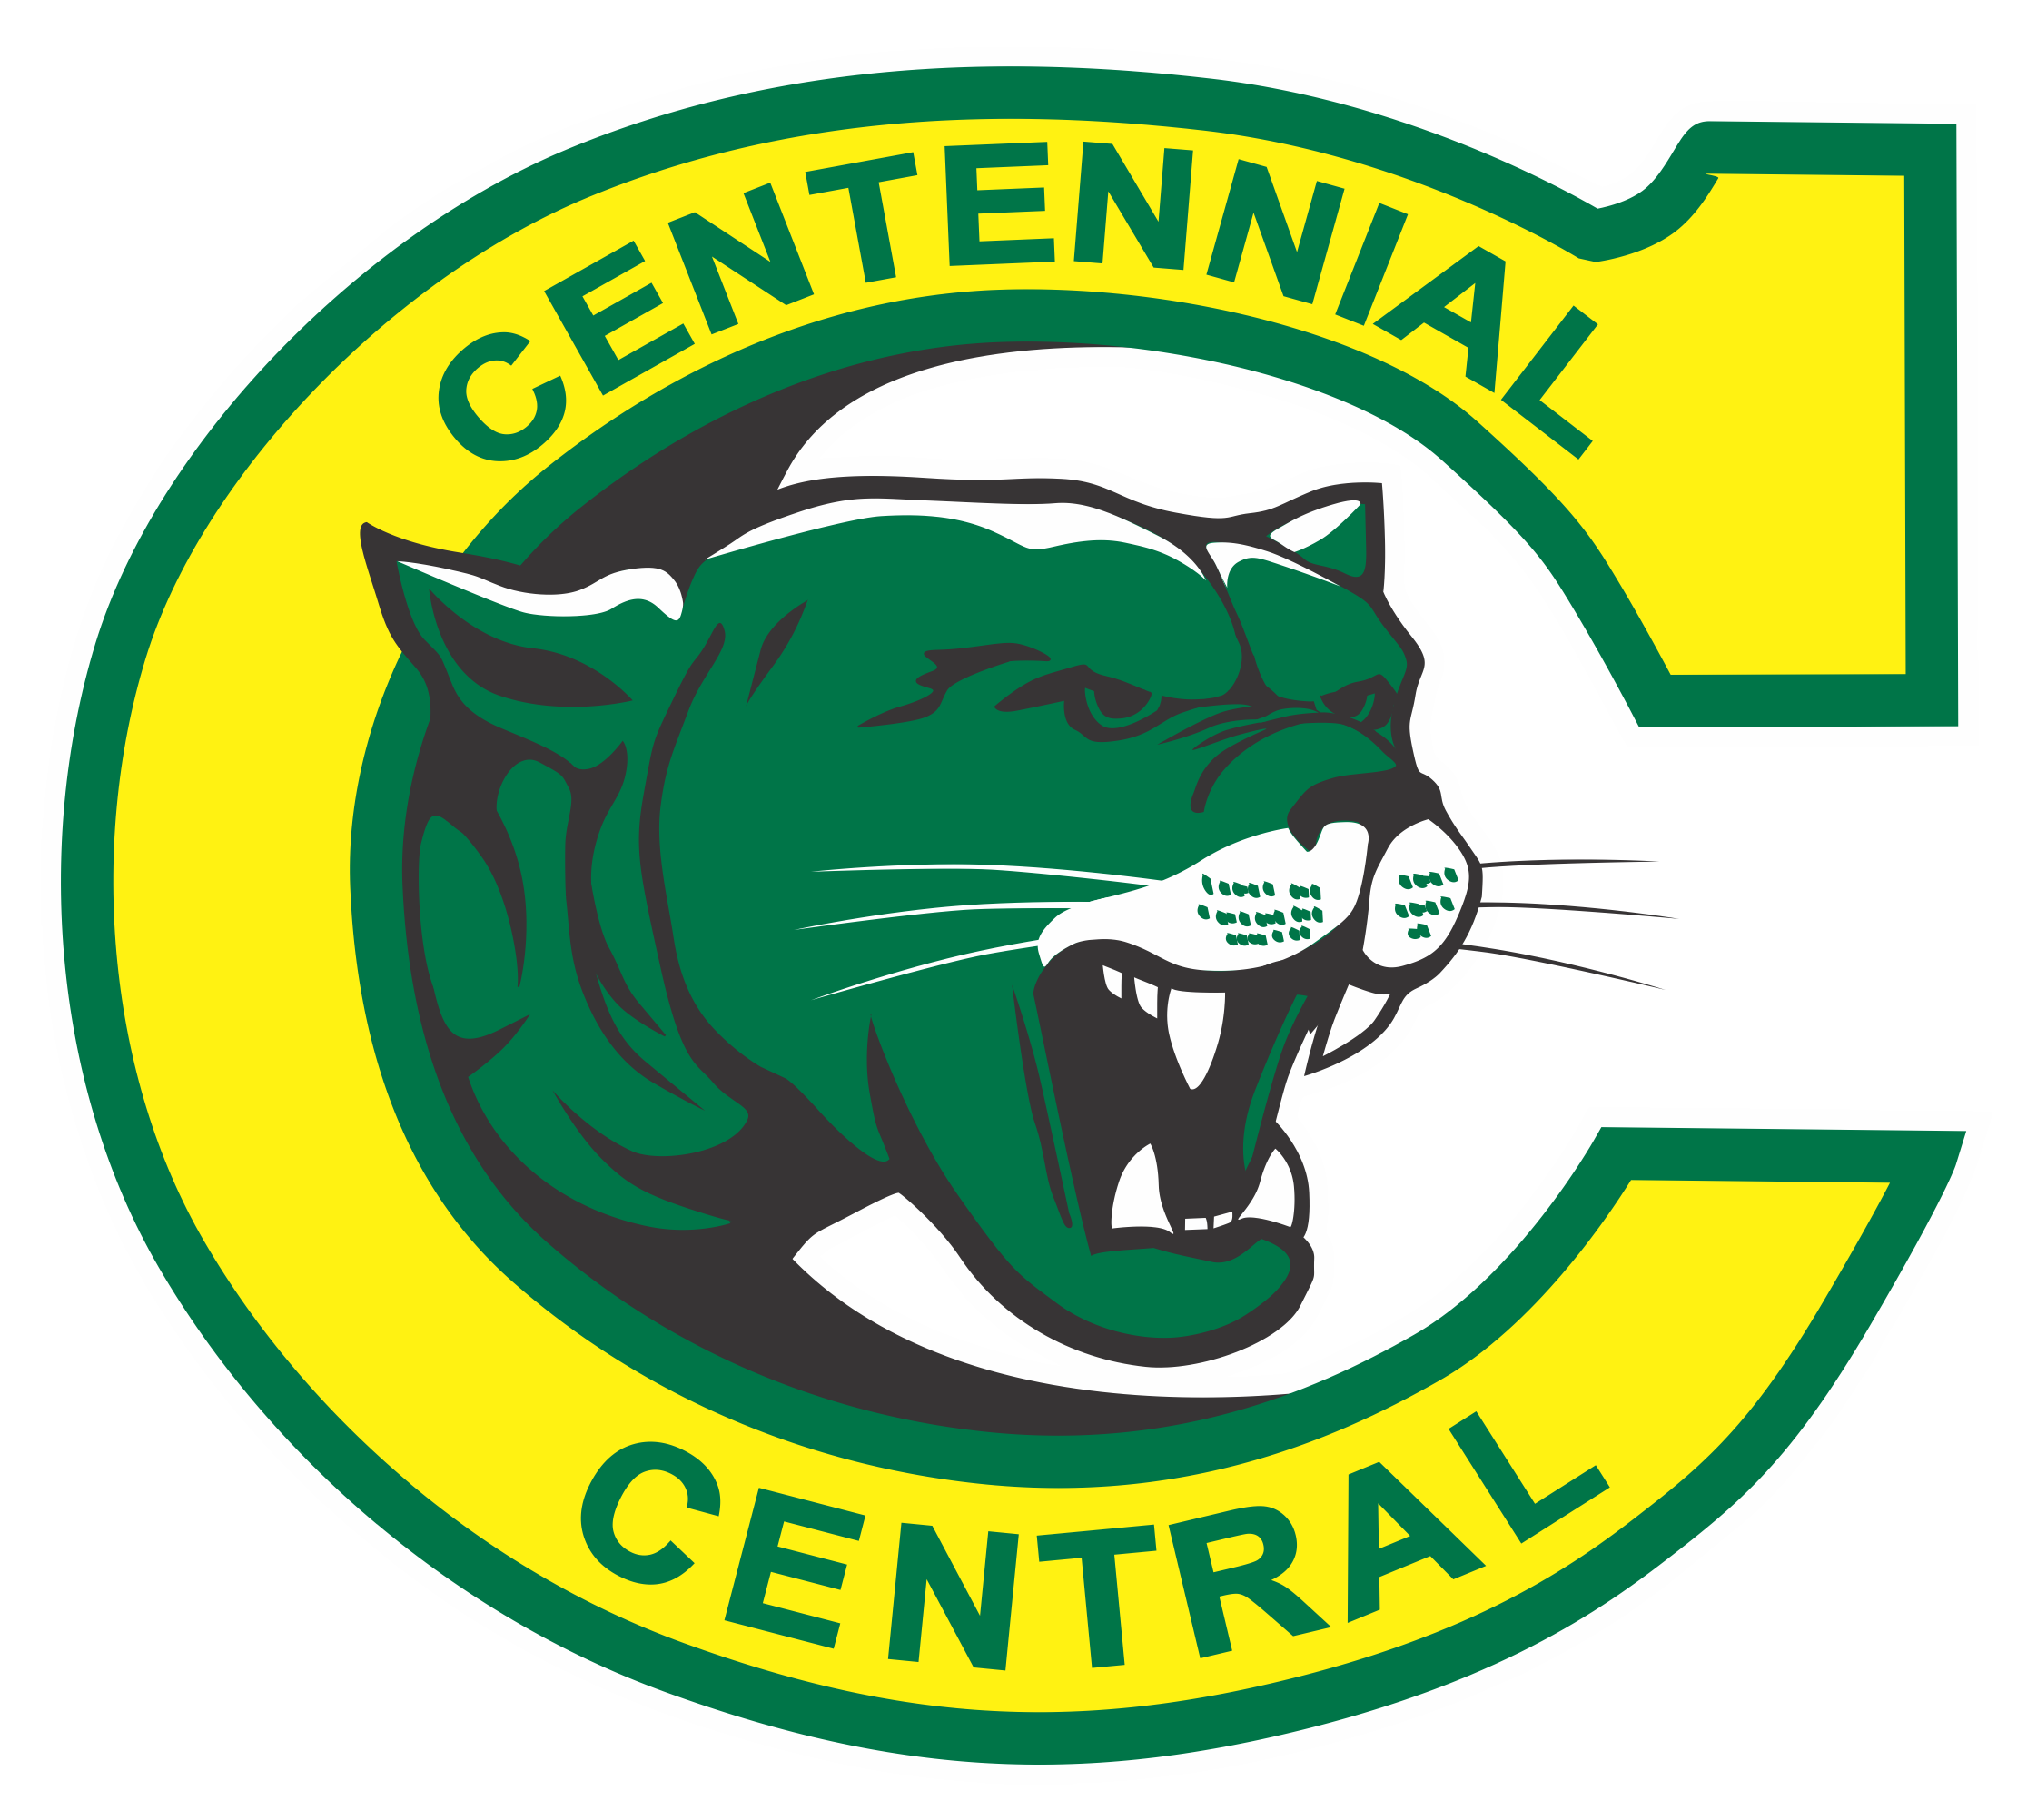 Centennial Central Public School footer logo